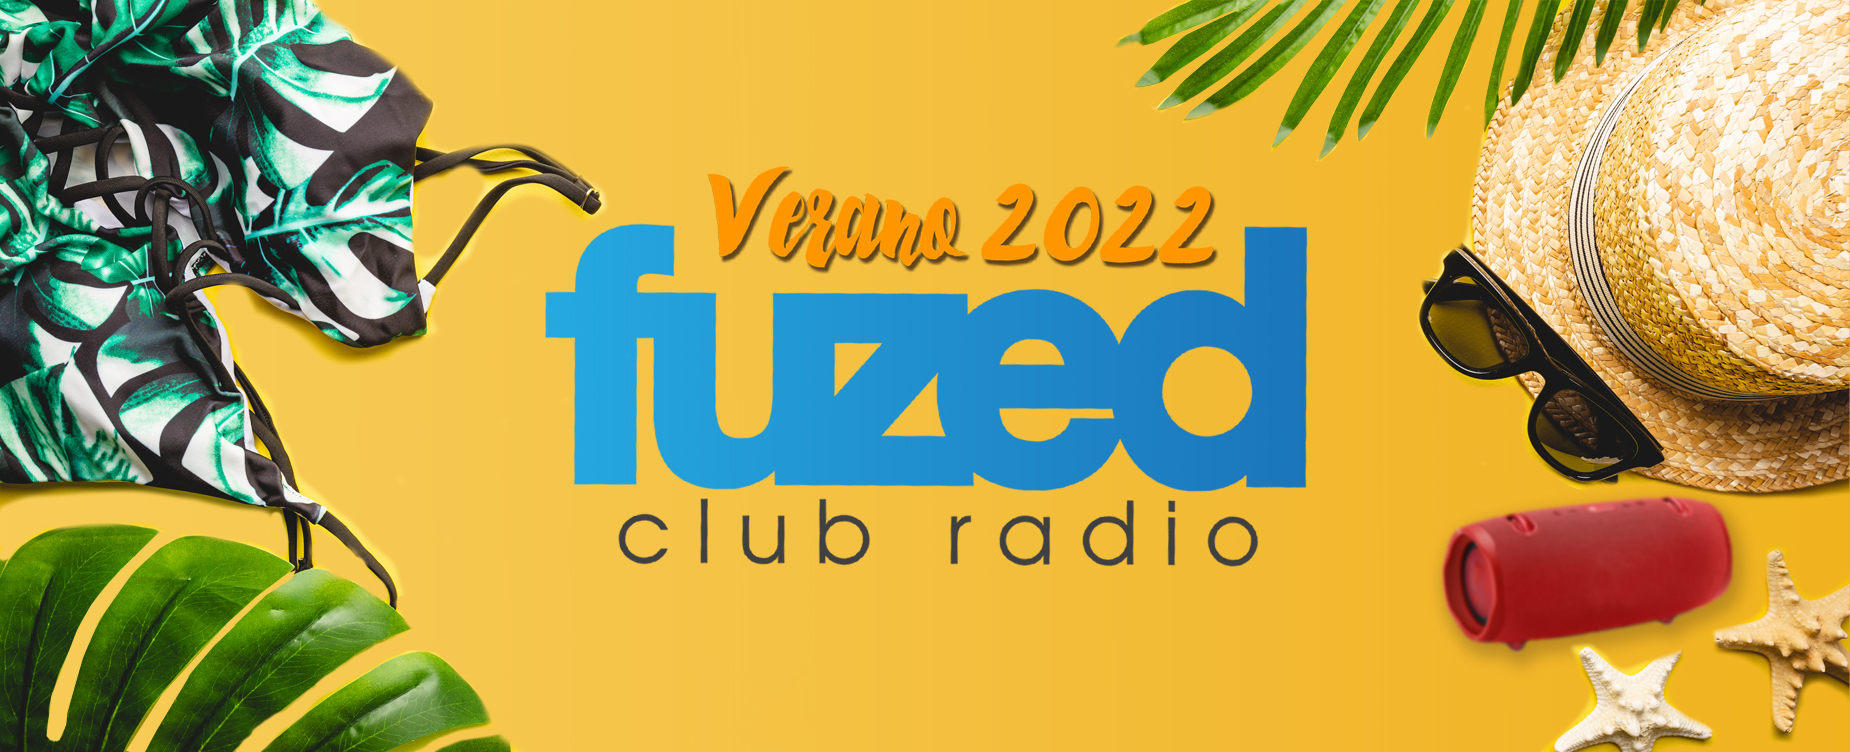 Verano 2022 main banner